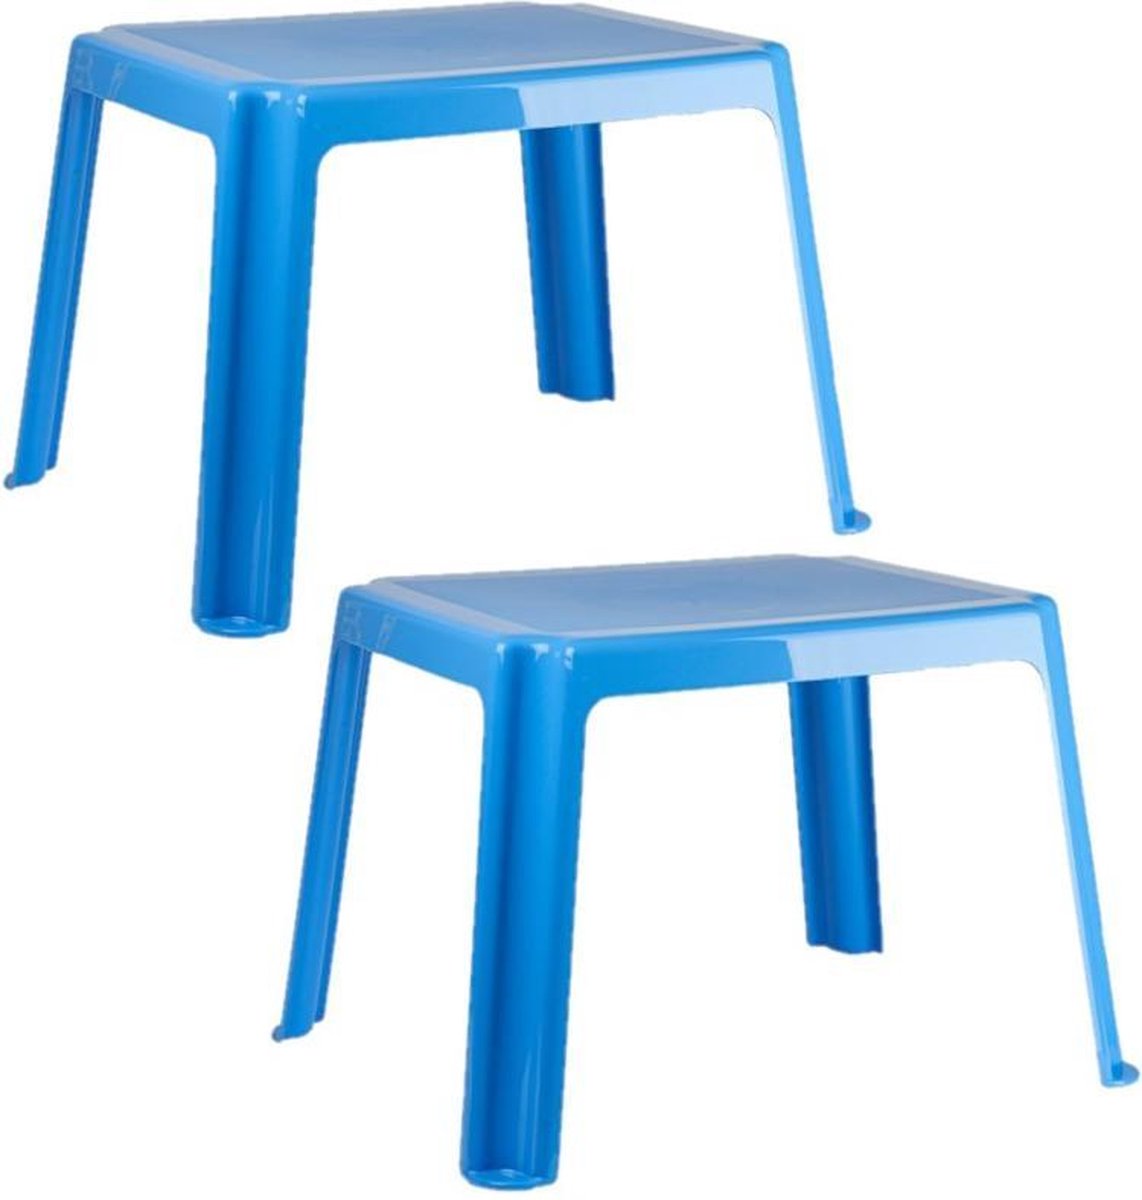 2x stuks kunststof kindertafels blauw 55 x 66 x 43 cm - Kindertafel buiten - Bijzettafel